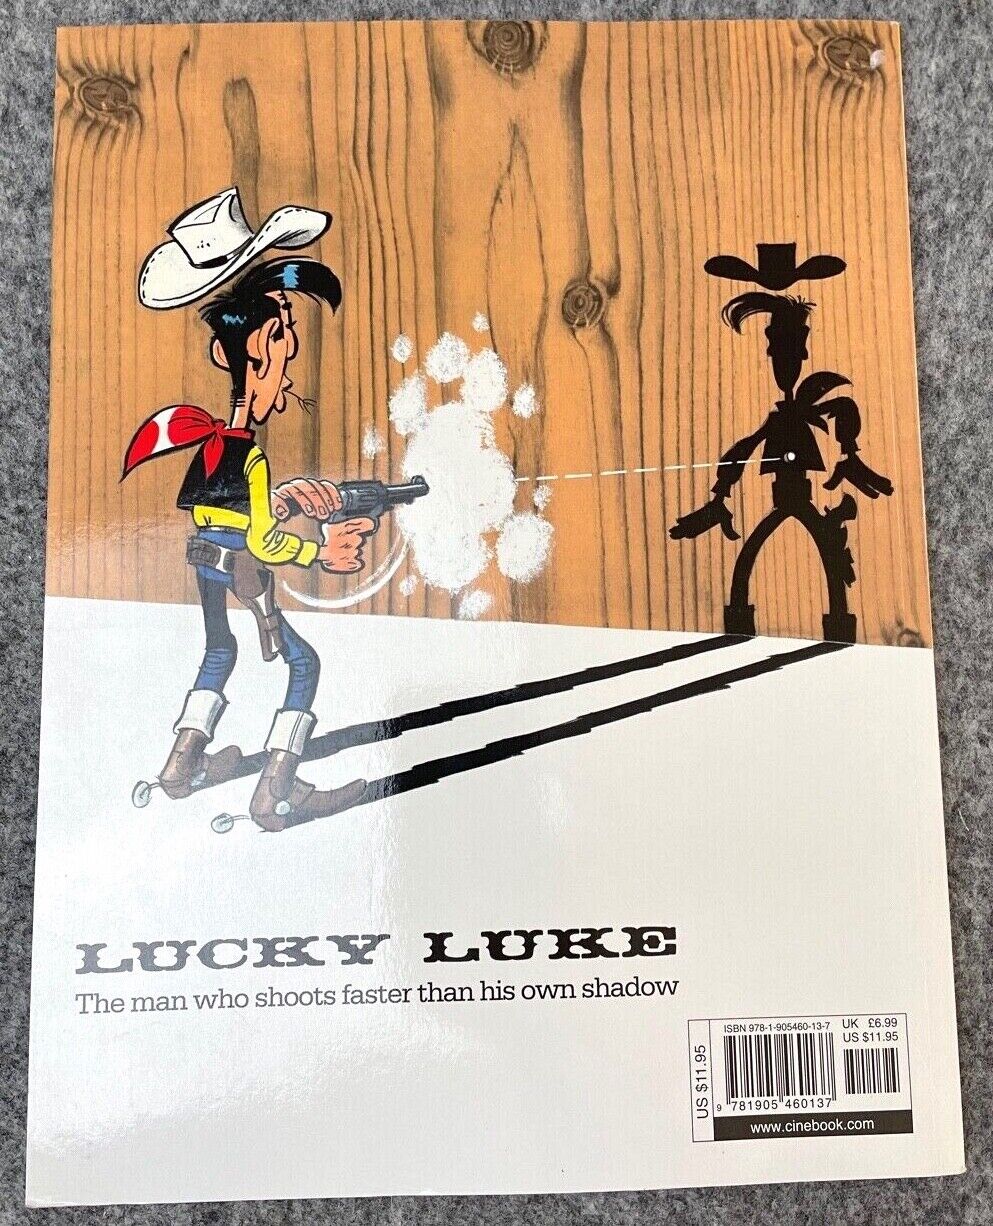 3 Dalton City Lucky Luke Cinebook Paperback UK Comic Book